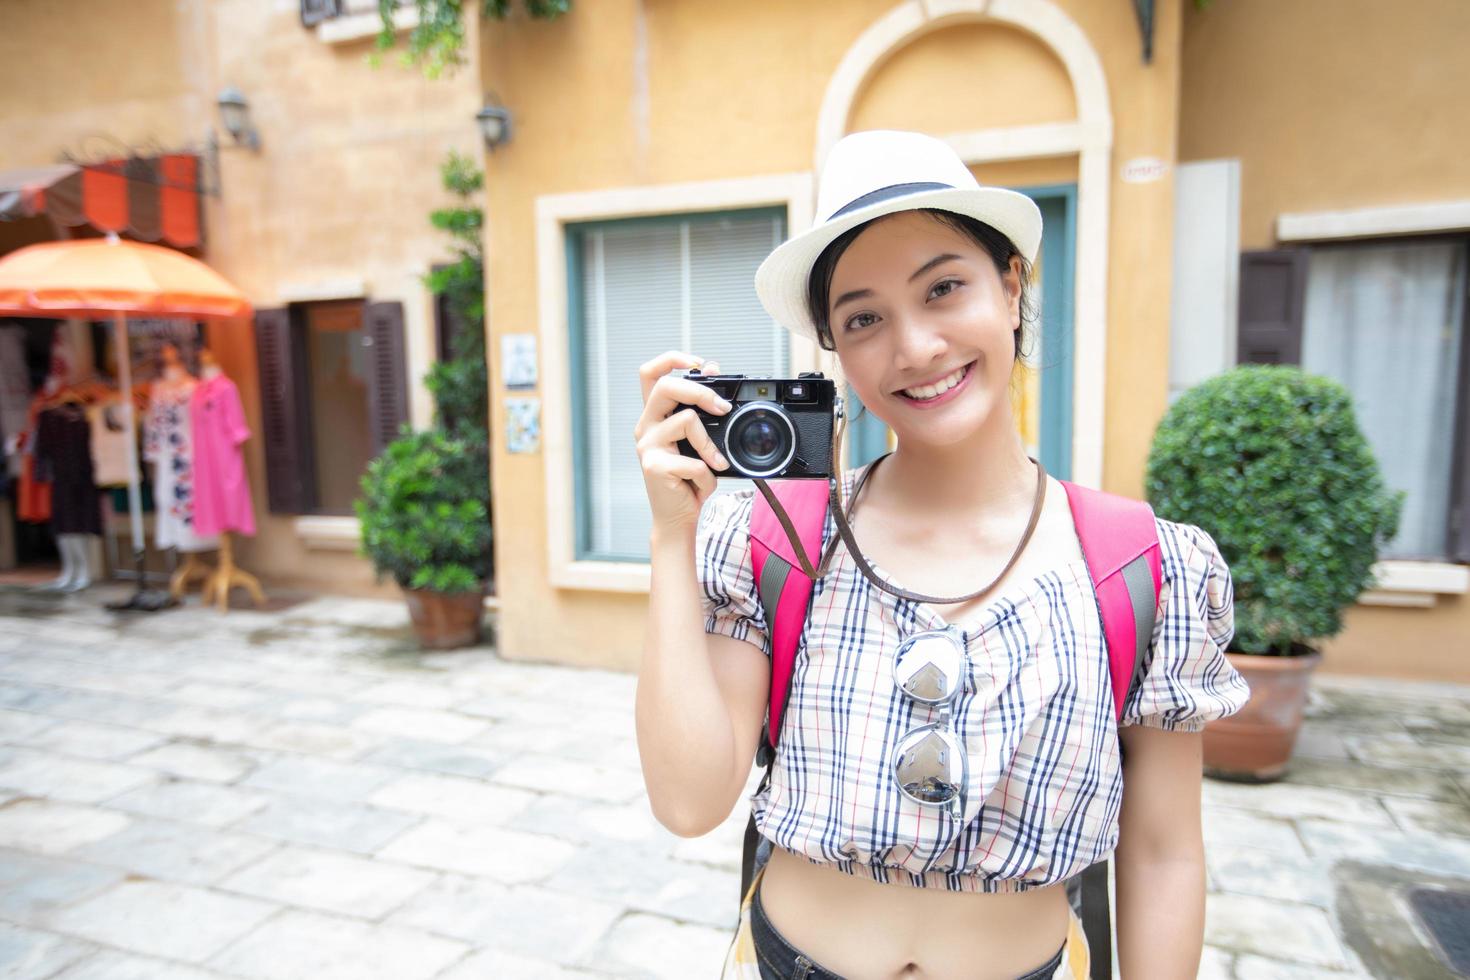 Aziatische vrouwenrugzakken die samen lopen en gelukkig zijn, nemen foto's en selfie, ontspannen tijd op vakantieconceptreizen foto